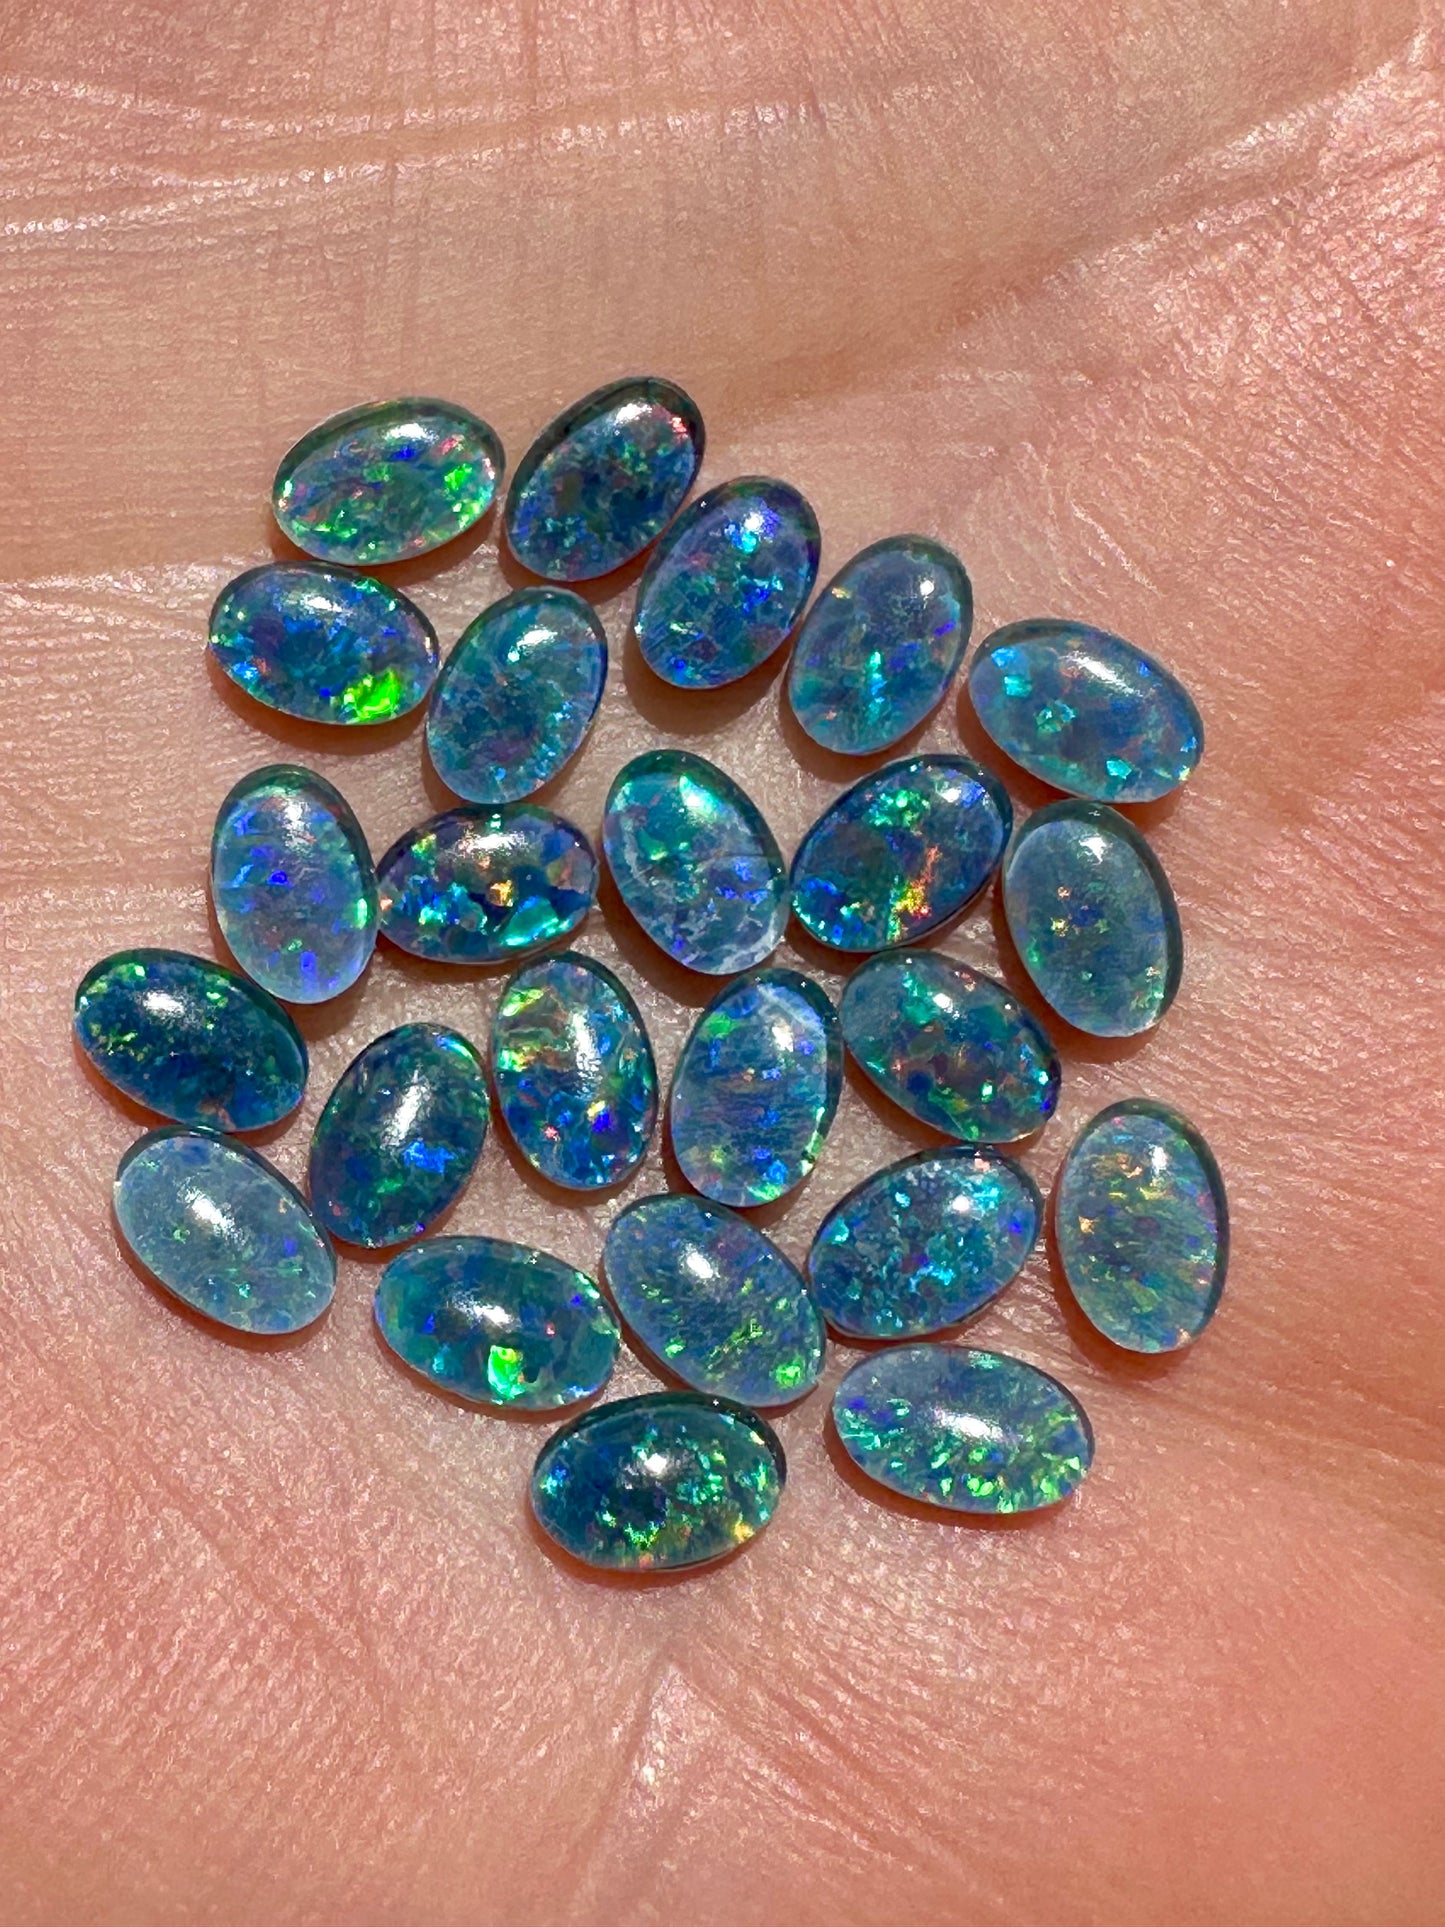 Australian Opal triplets 6x4mm